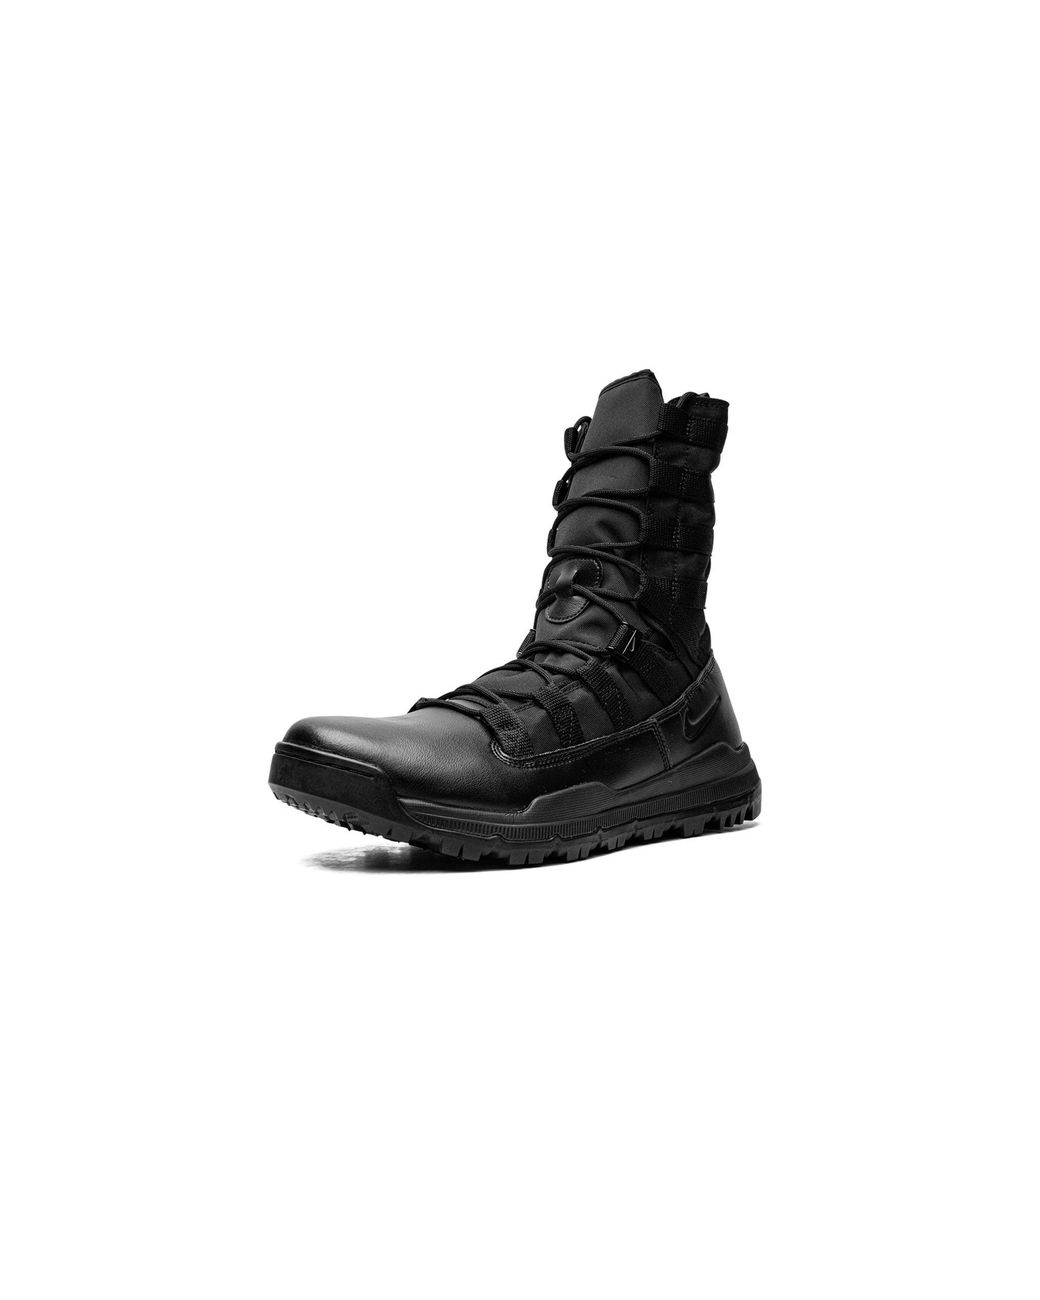 Nike Sfb Gen 2 8 " Shoes in Black | Lyst UK